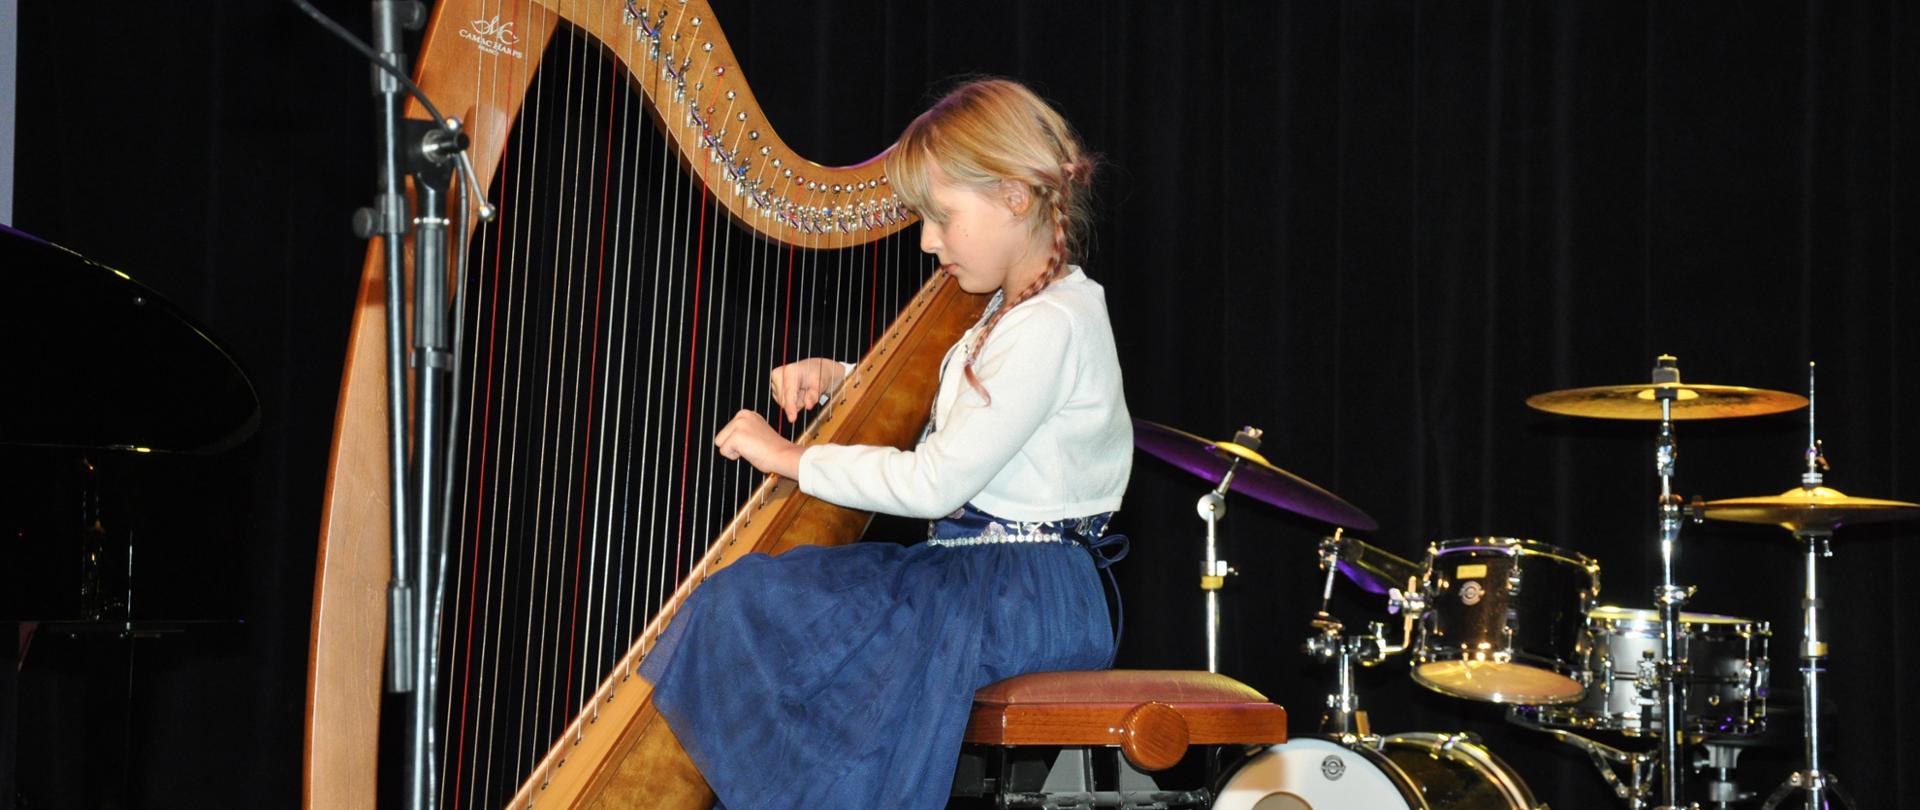 Dziewczynka grająca na harfie. W tle instrumenty perkusyjne.